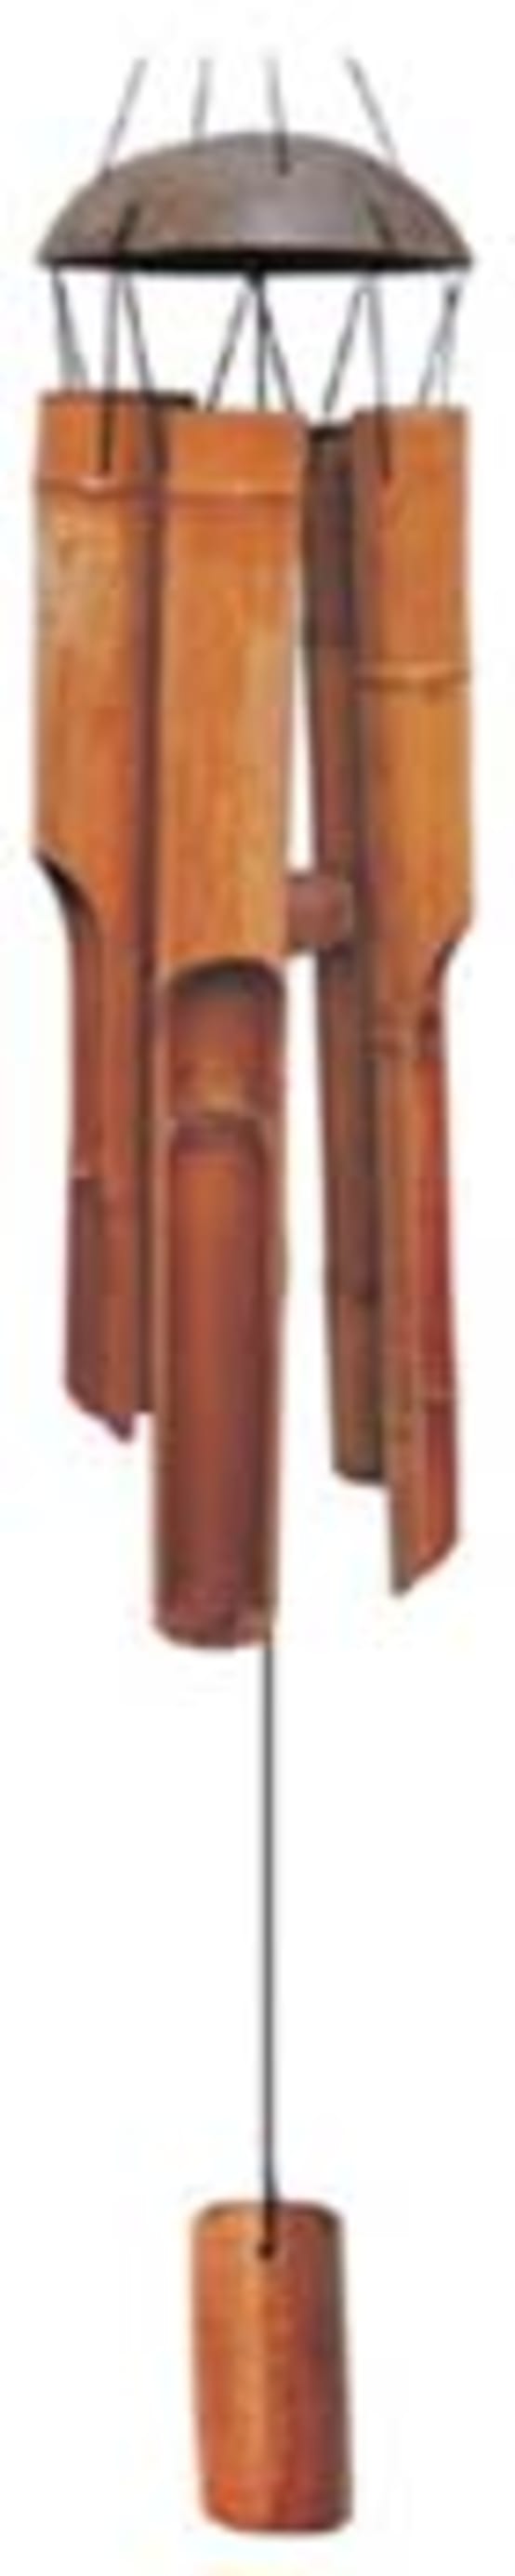 Carillon en bambou - DMO1760